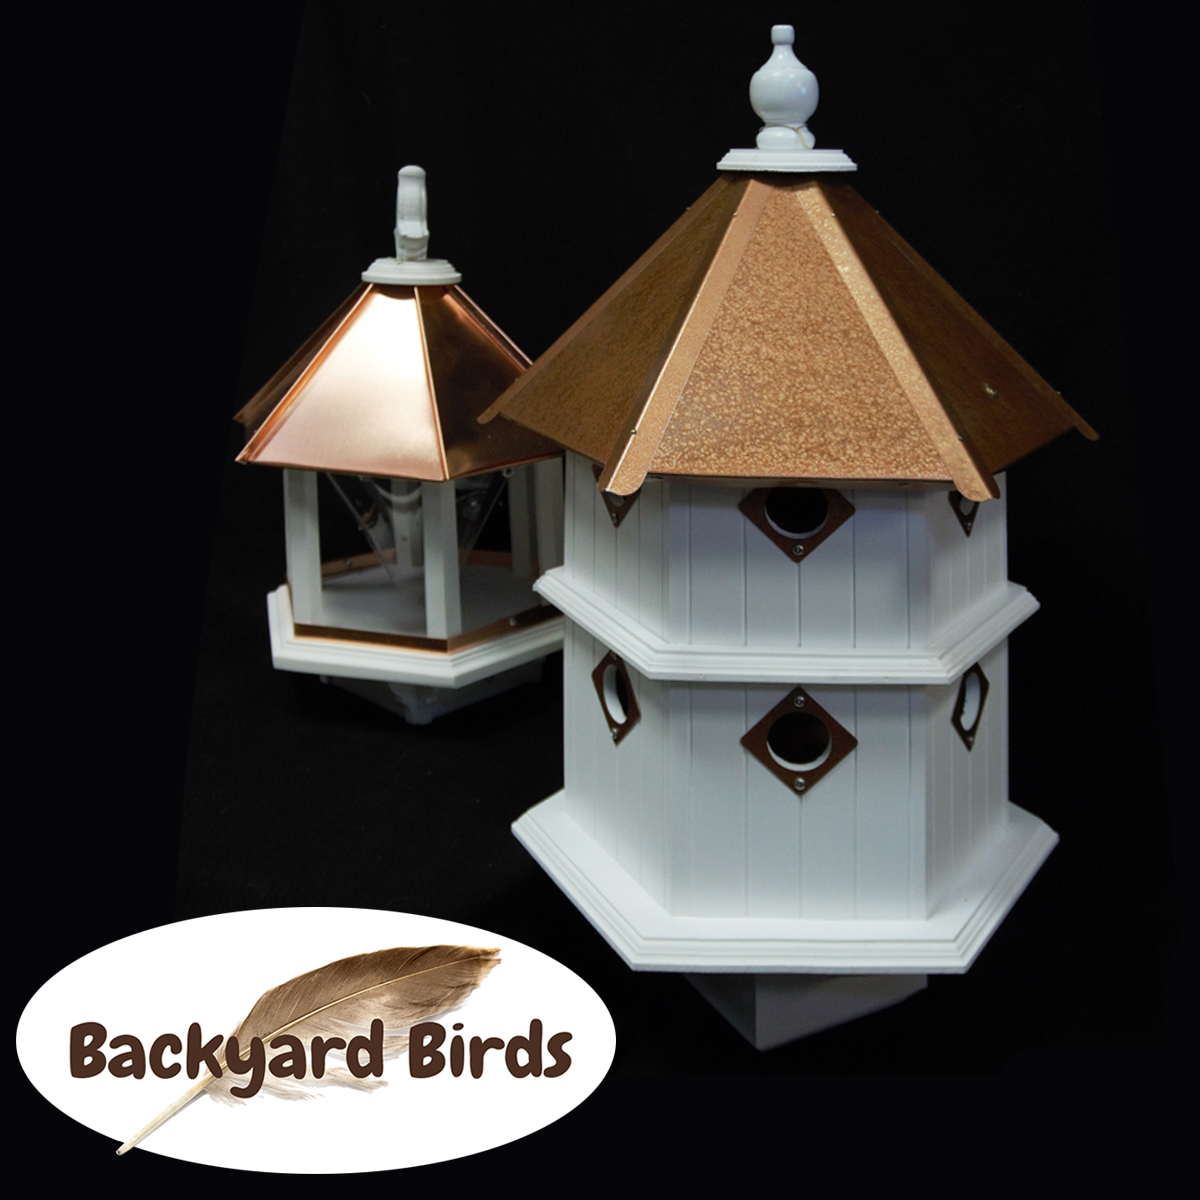 Backyards Birds